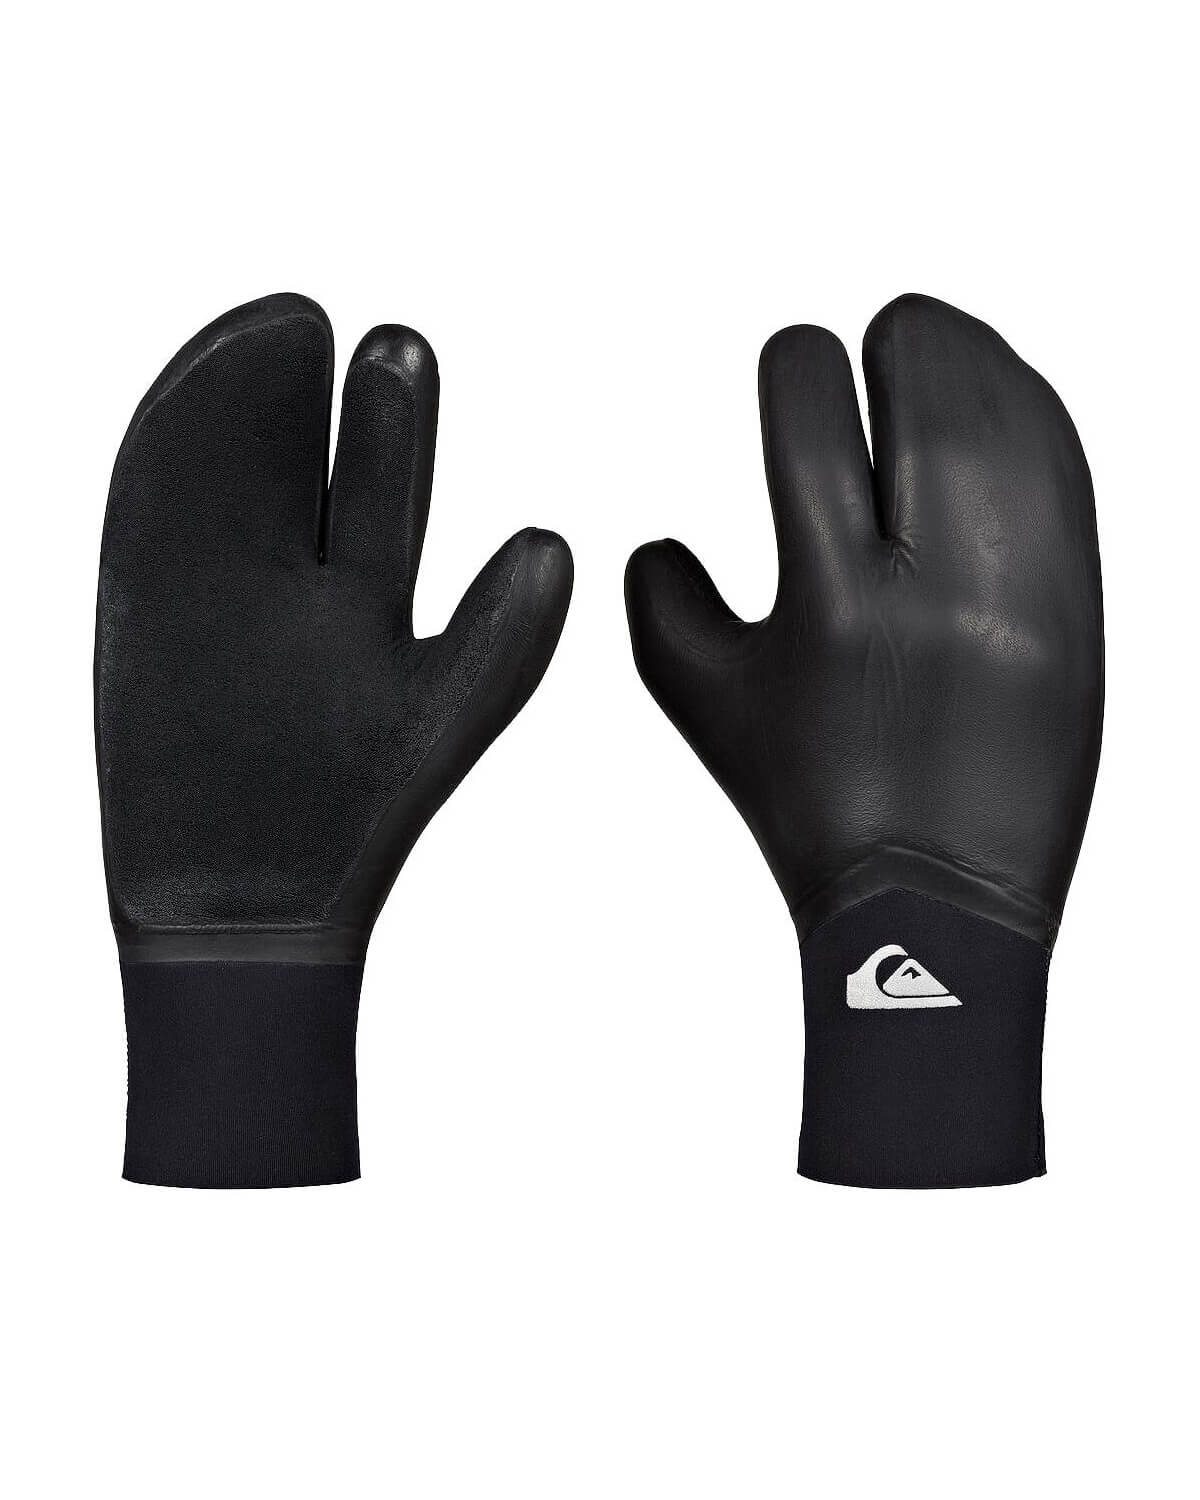 5mm Quiksilver Highline Neogoo 3-Finger Wetsuit Gloves